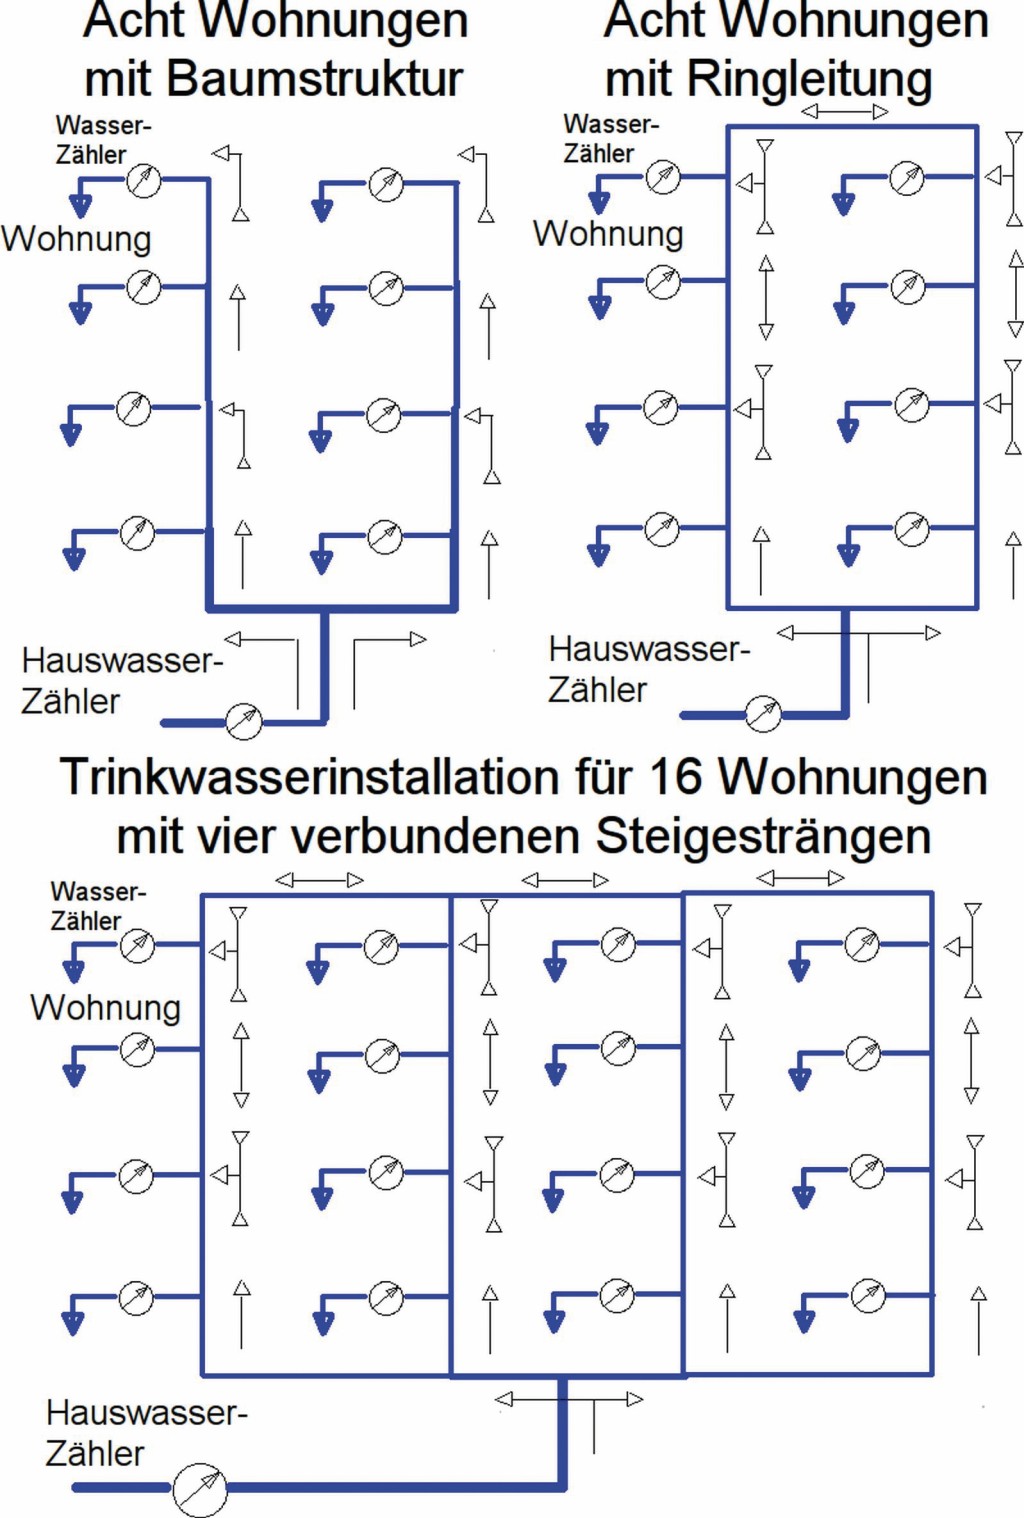 Trinkwasserinstallationen im Wohnungsbau mit Baumstruktur, Ringleitung und Maschen für 8 und 16 Wohnungen. Bild: Kremer